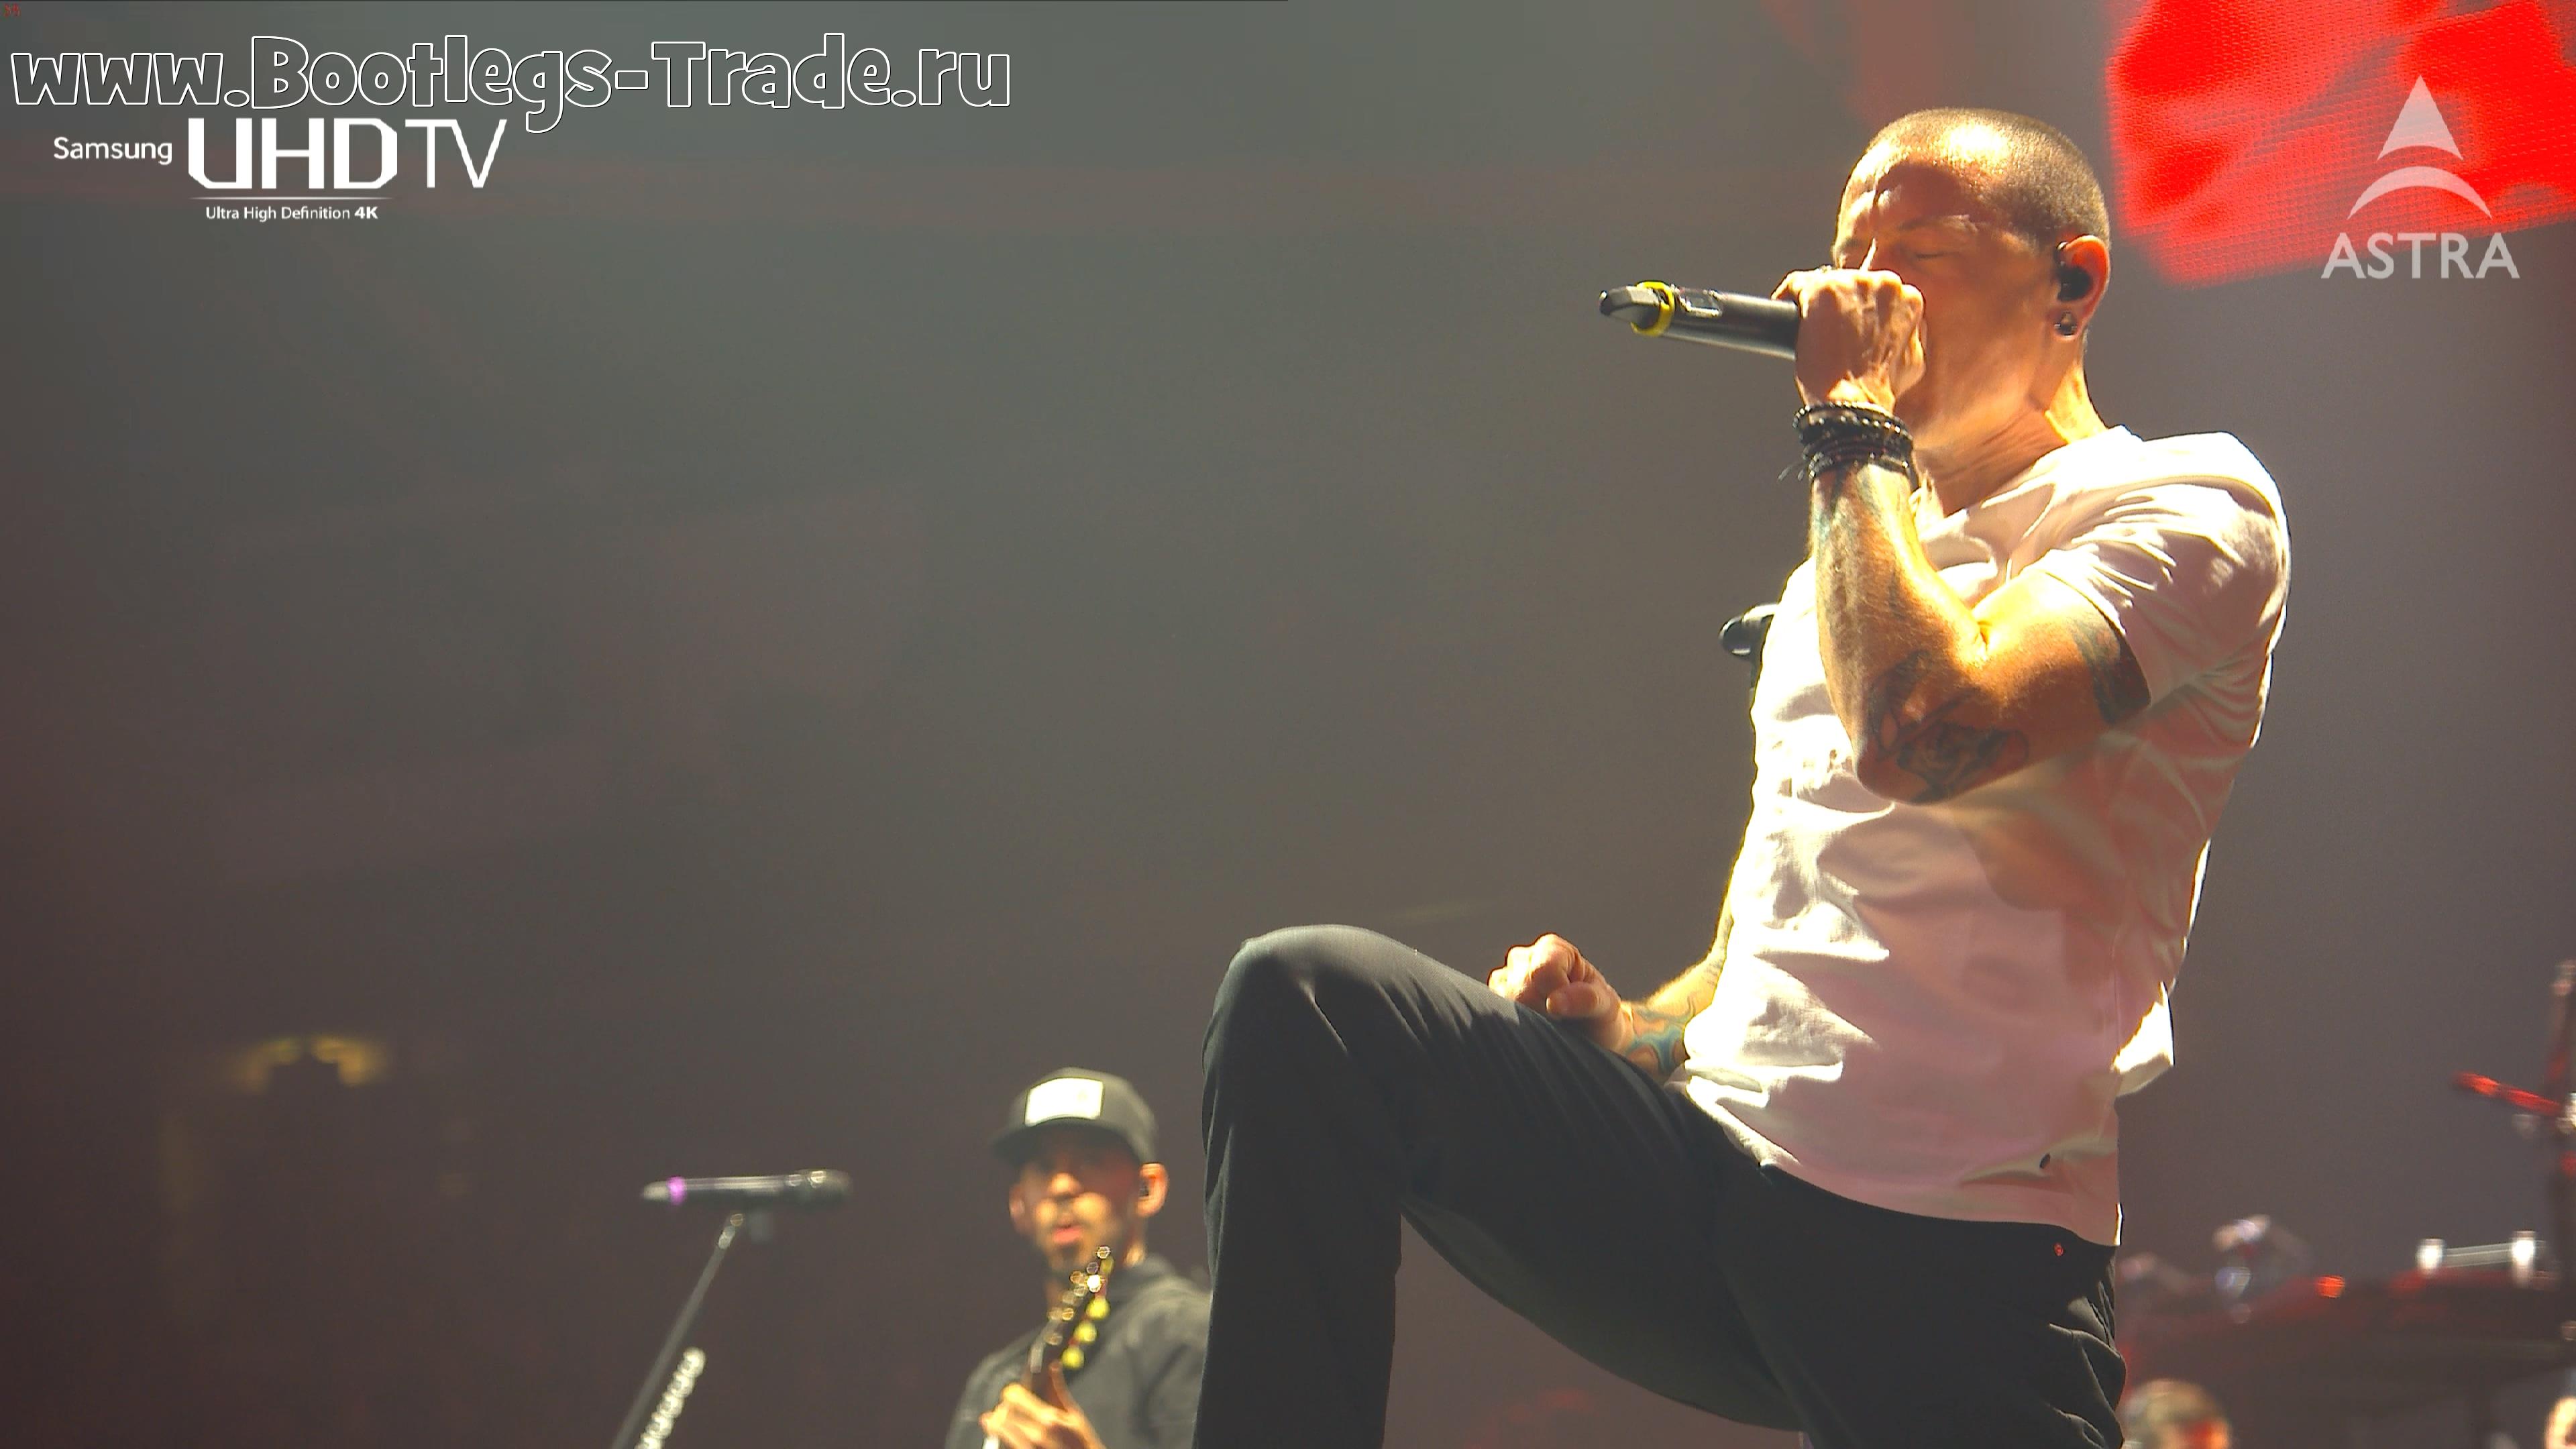 Linkin Park 2014-11-19 O2 World, Berlin, Germany (UHD)